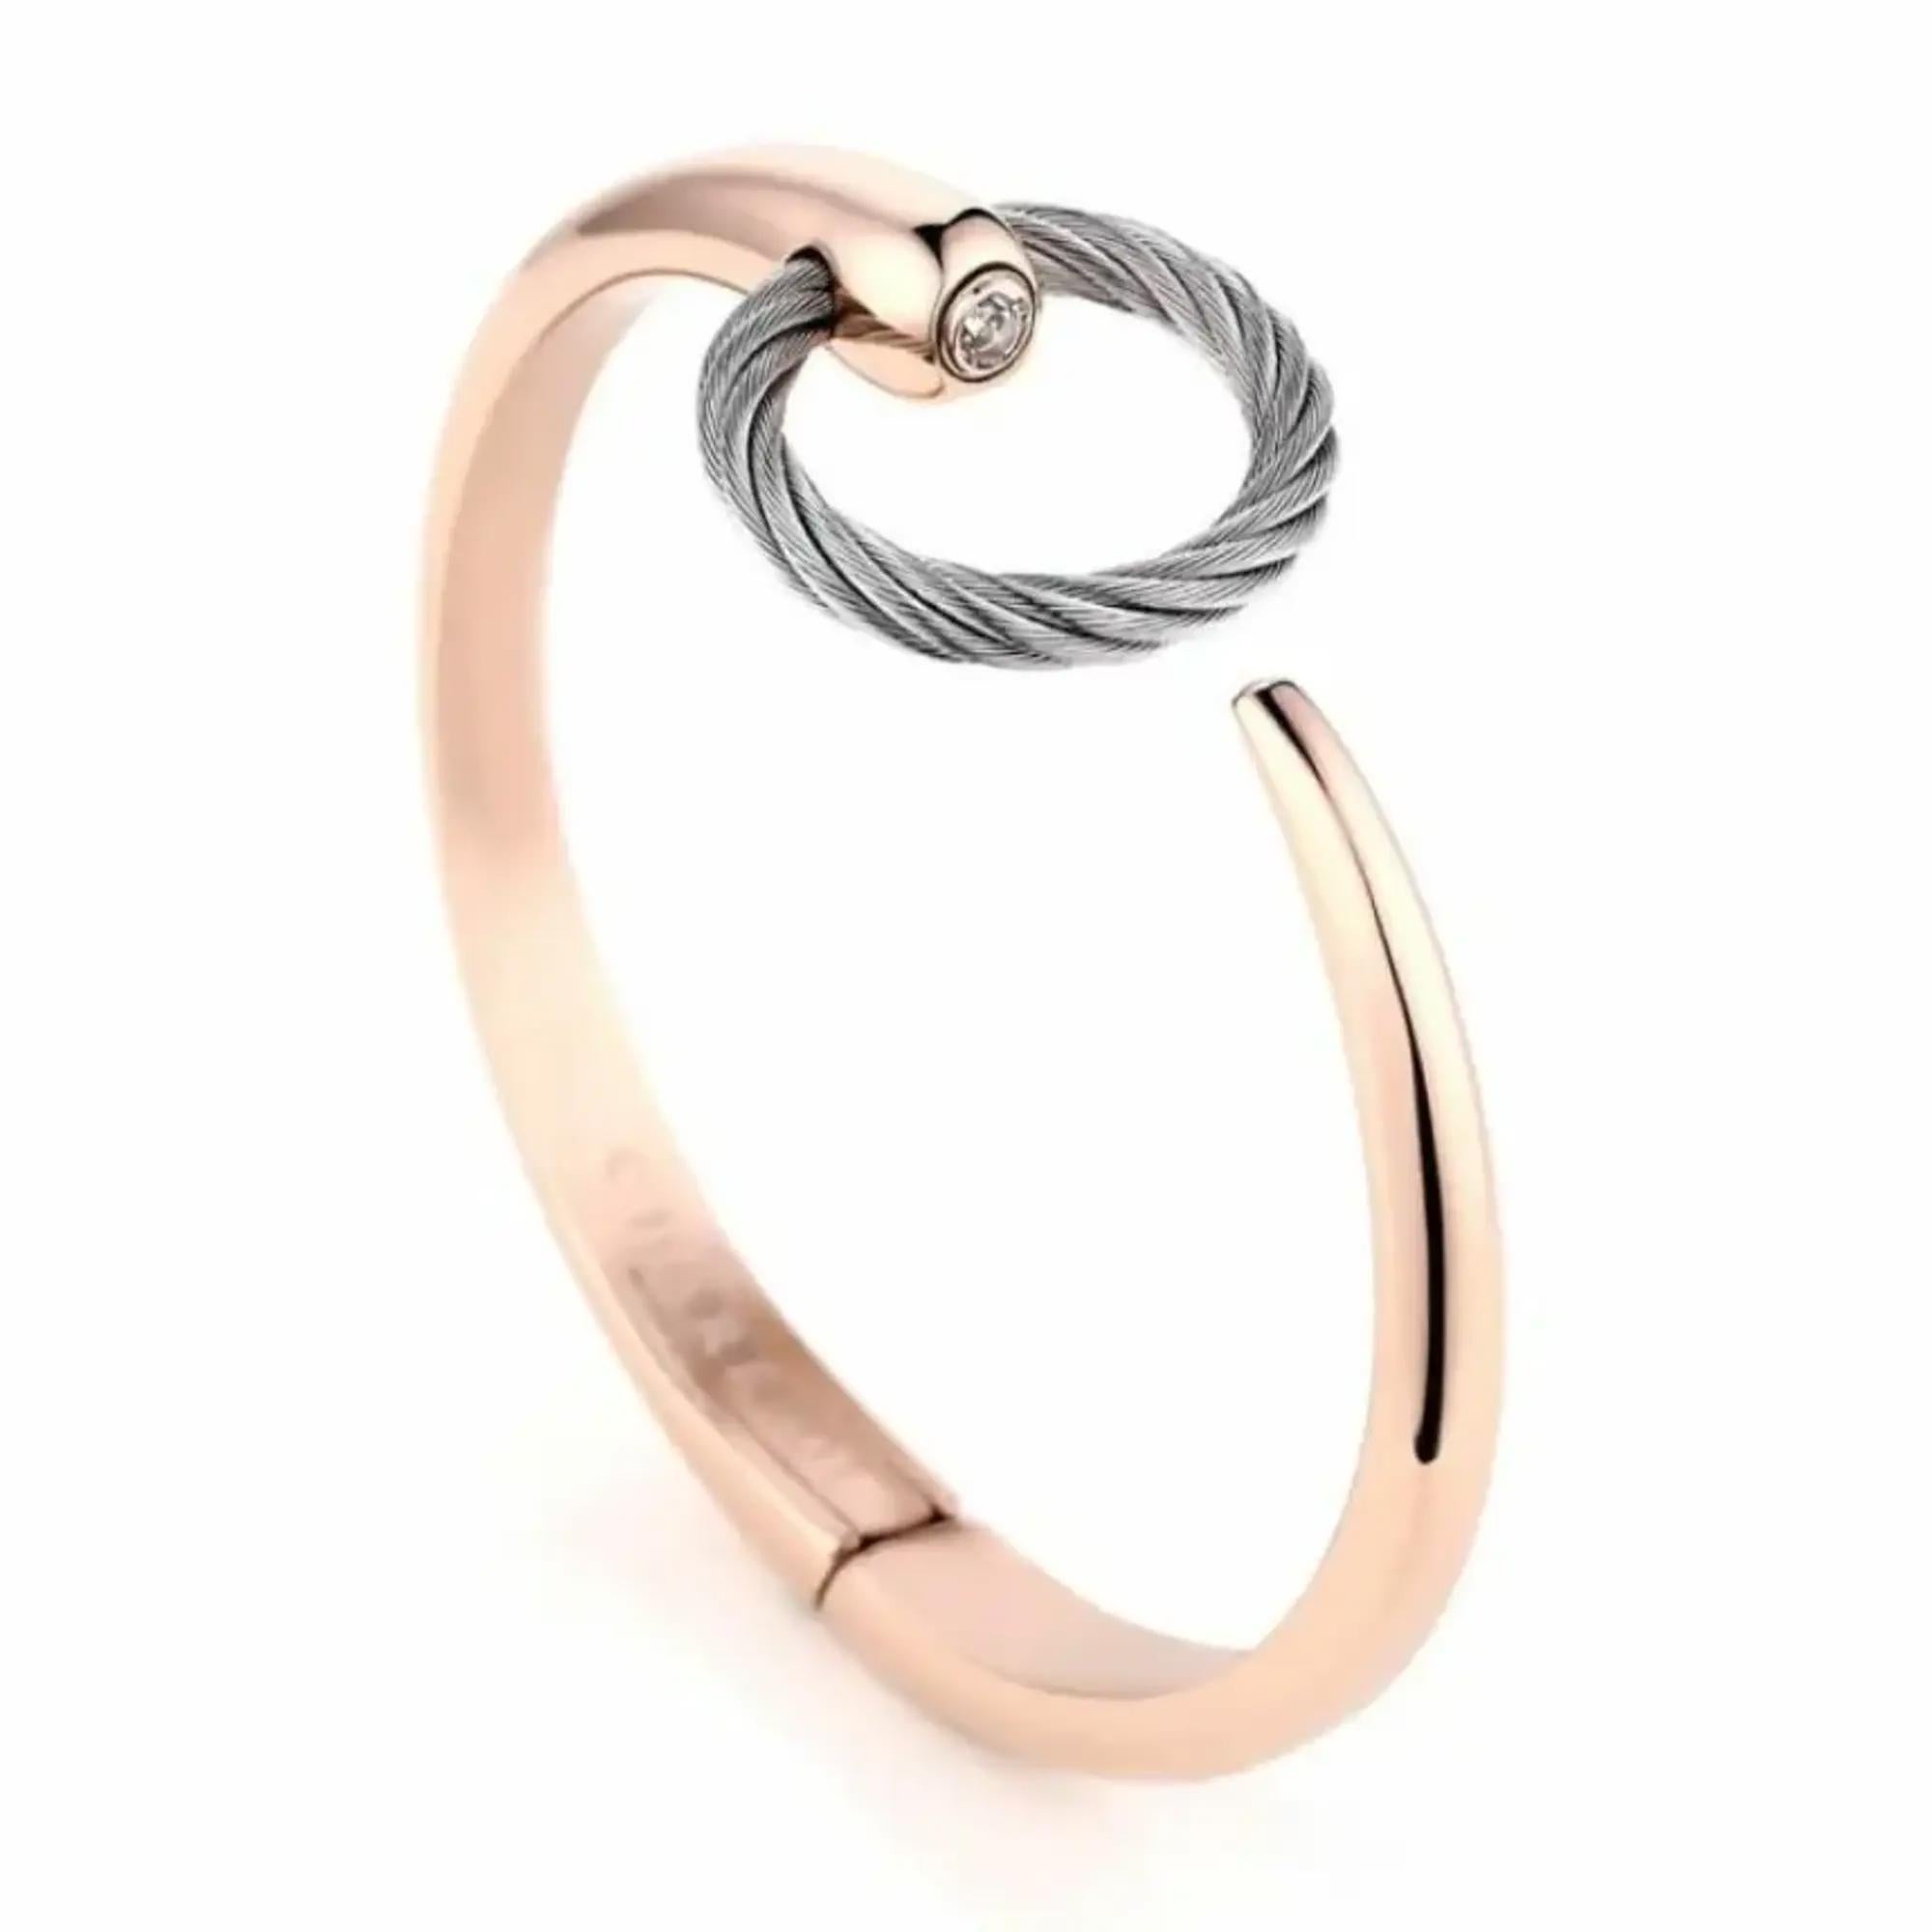 Ce magnifique bracelet manchette ouvert Infinity Zen de Charriol est un complément parfait à votre look de tous les jours. Super empilable et facile à porter, il se compose d'un bracelet à charnière en acier inoxydable plaqué PVD or rose, dont l'une